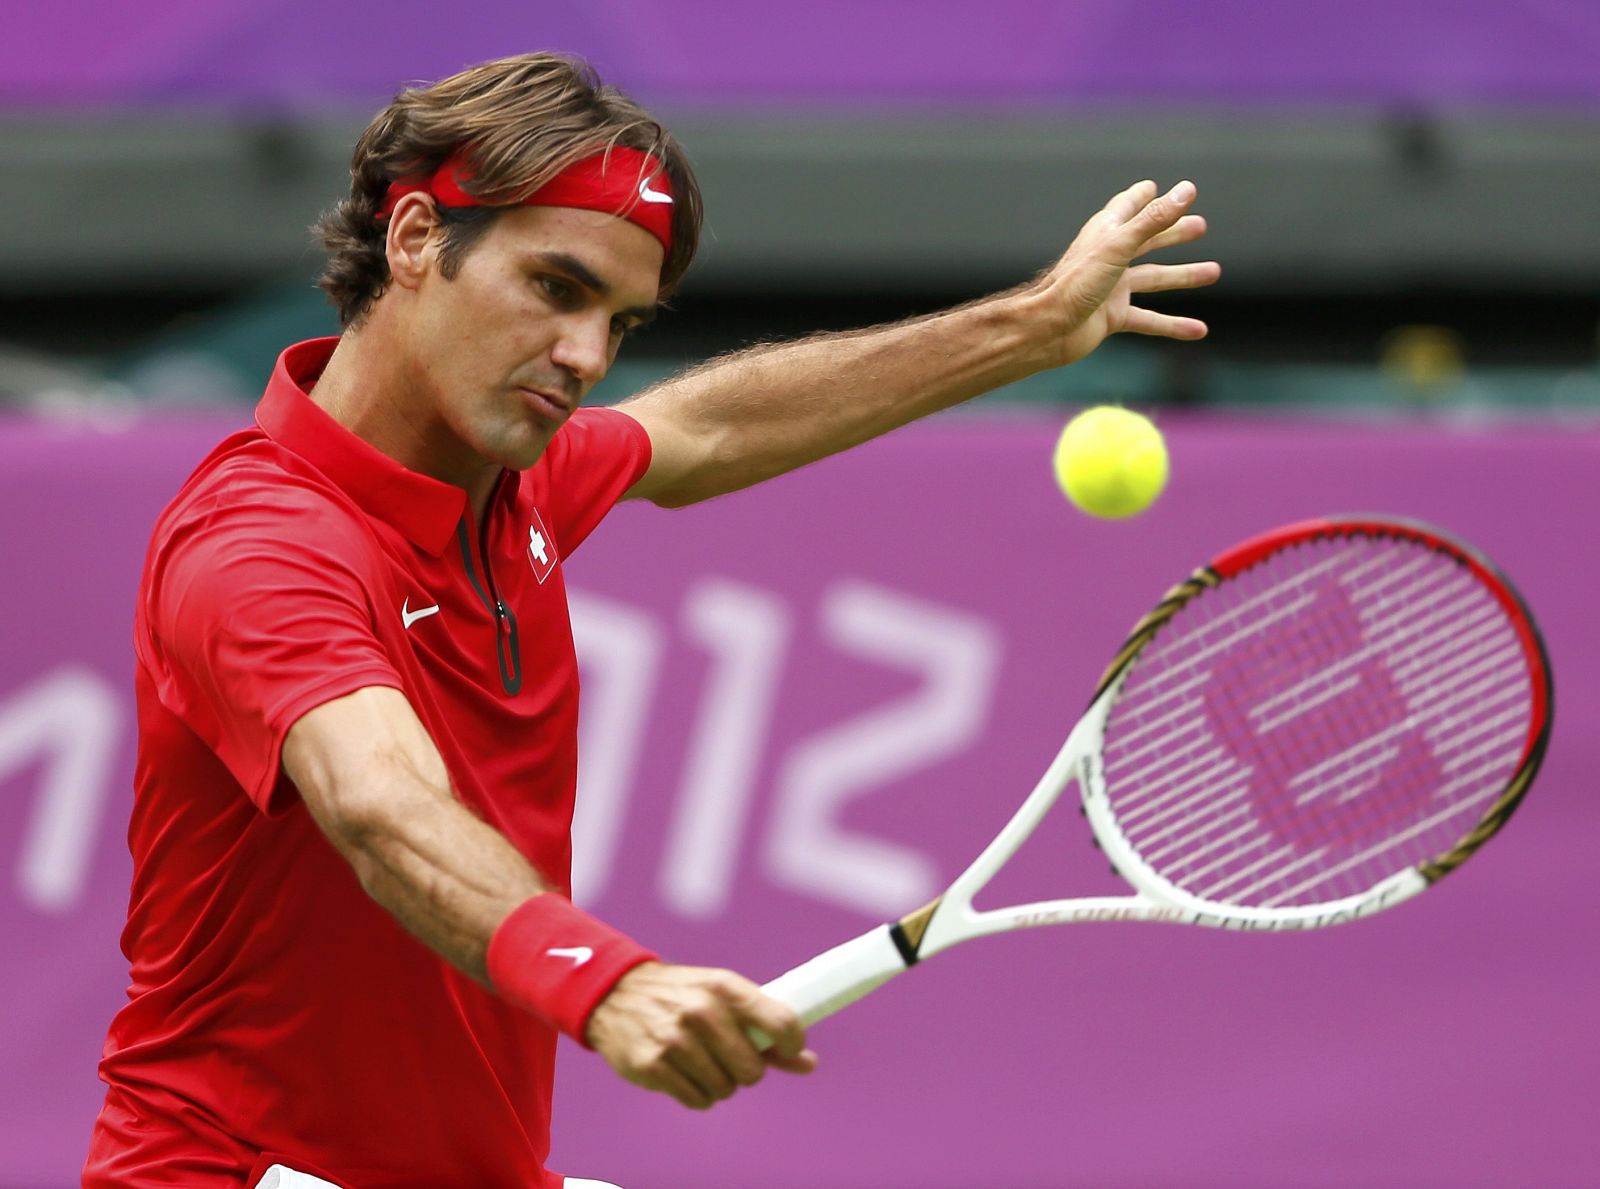 Roger Federer devuelve una bola al colombiano Alejandro Falla en Londres